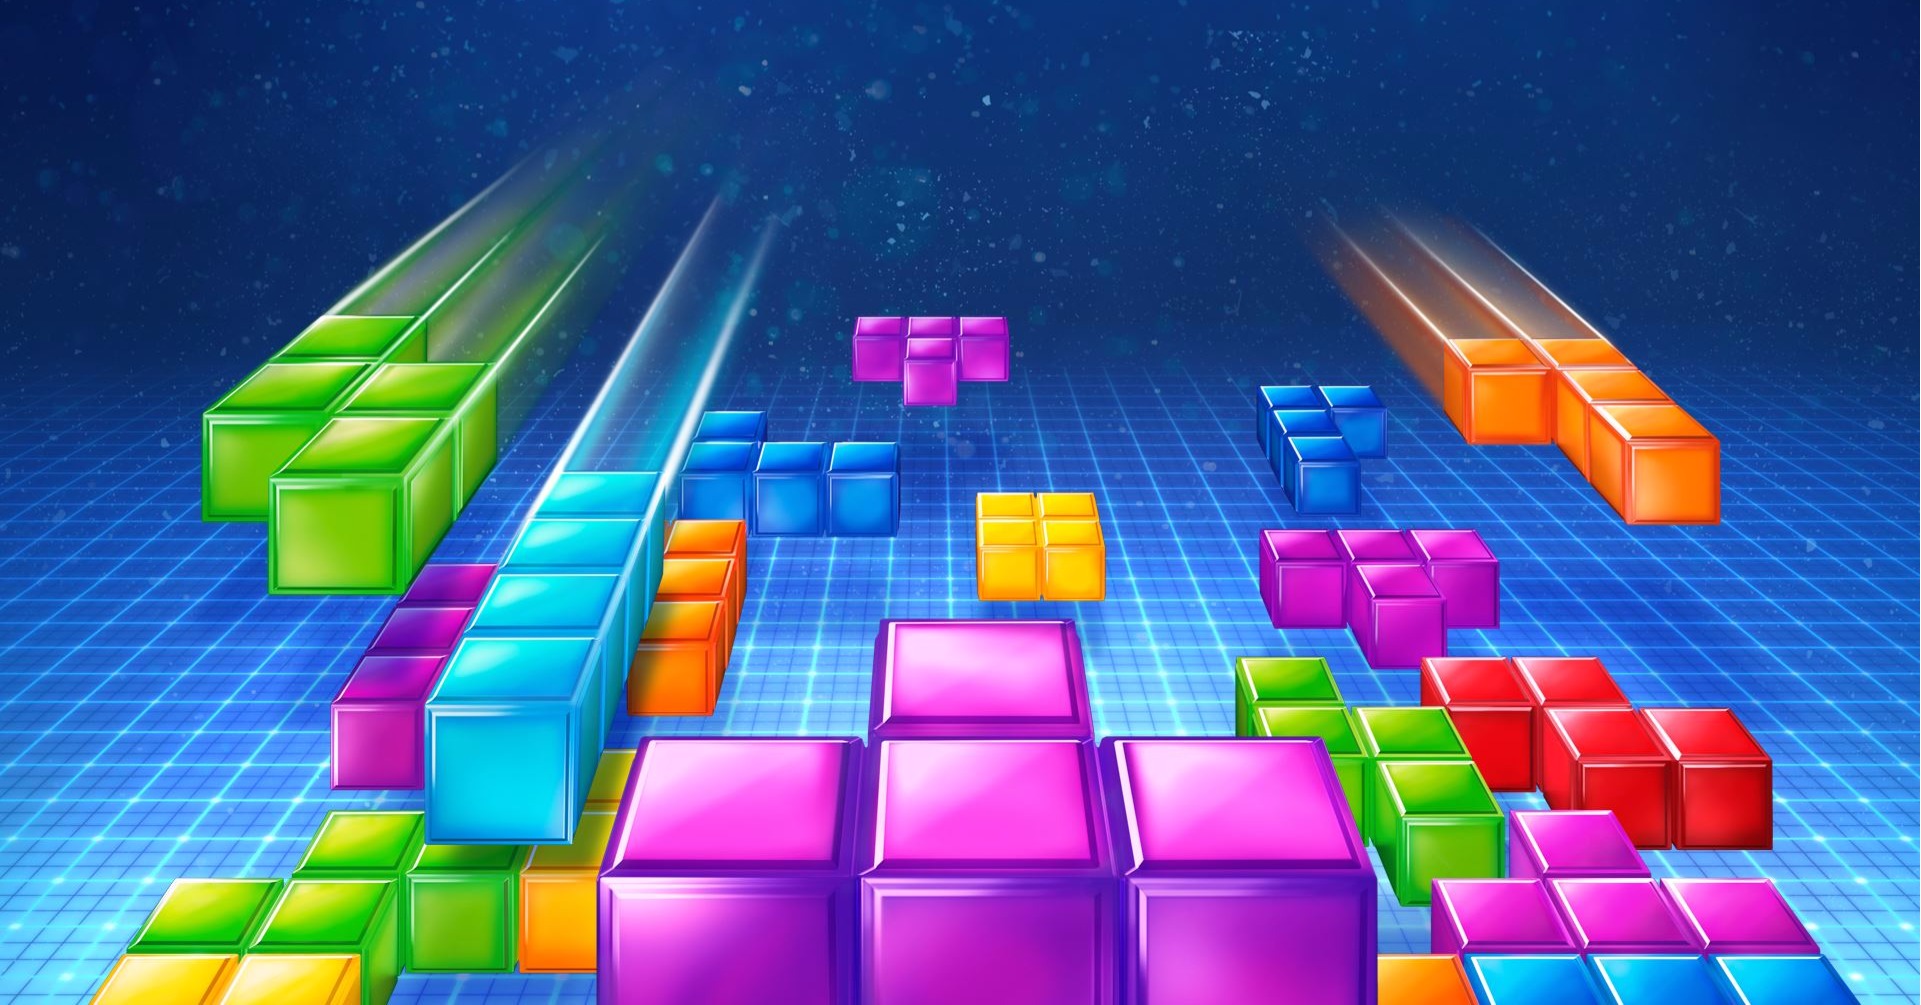 A Tetris filmtrilógia története monumentálisabb lesz, mint hinnénk